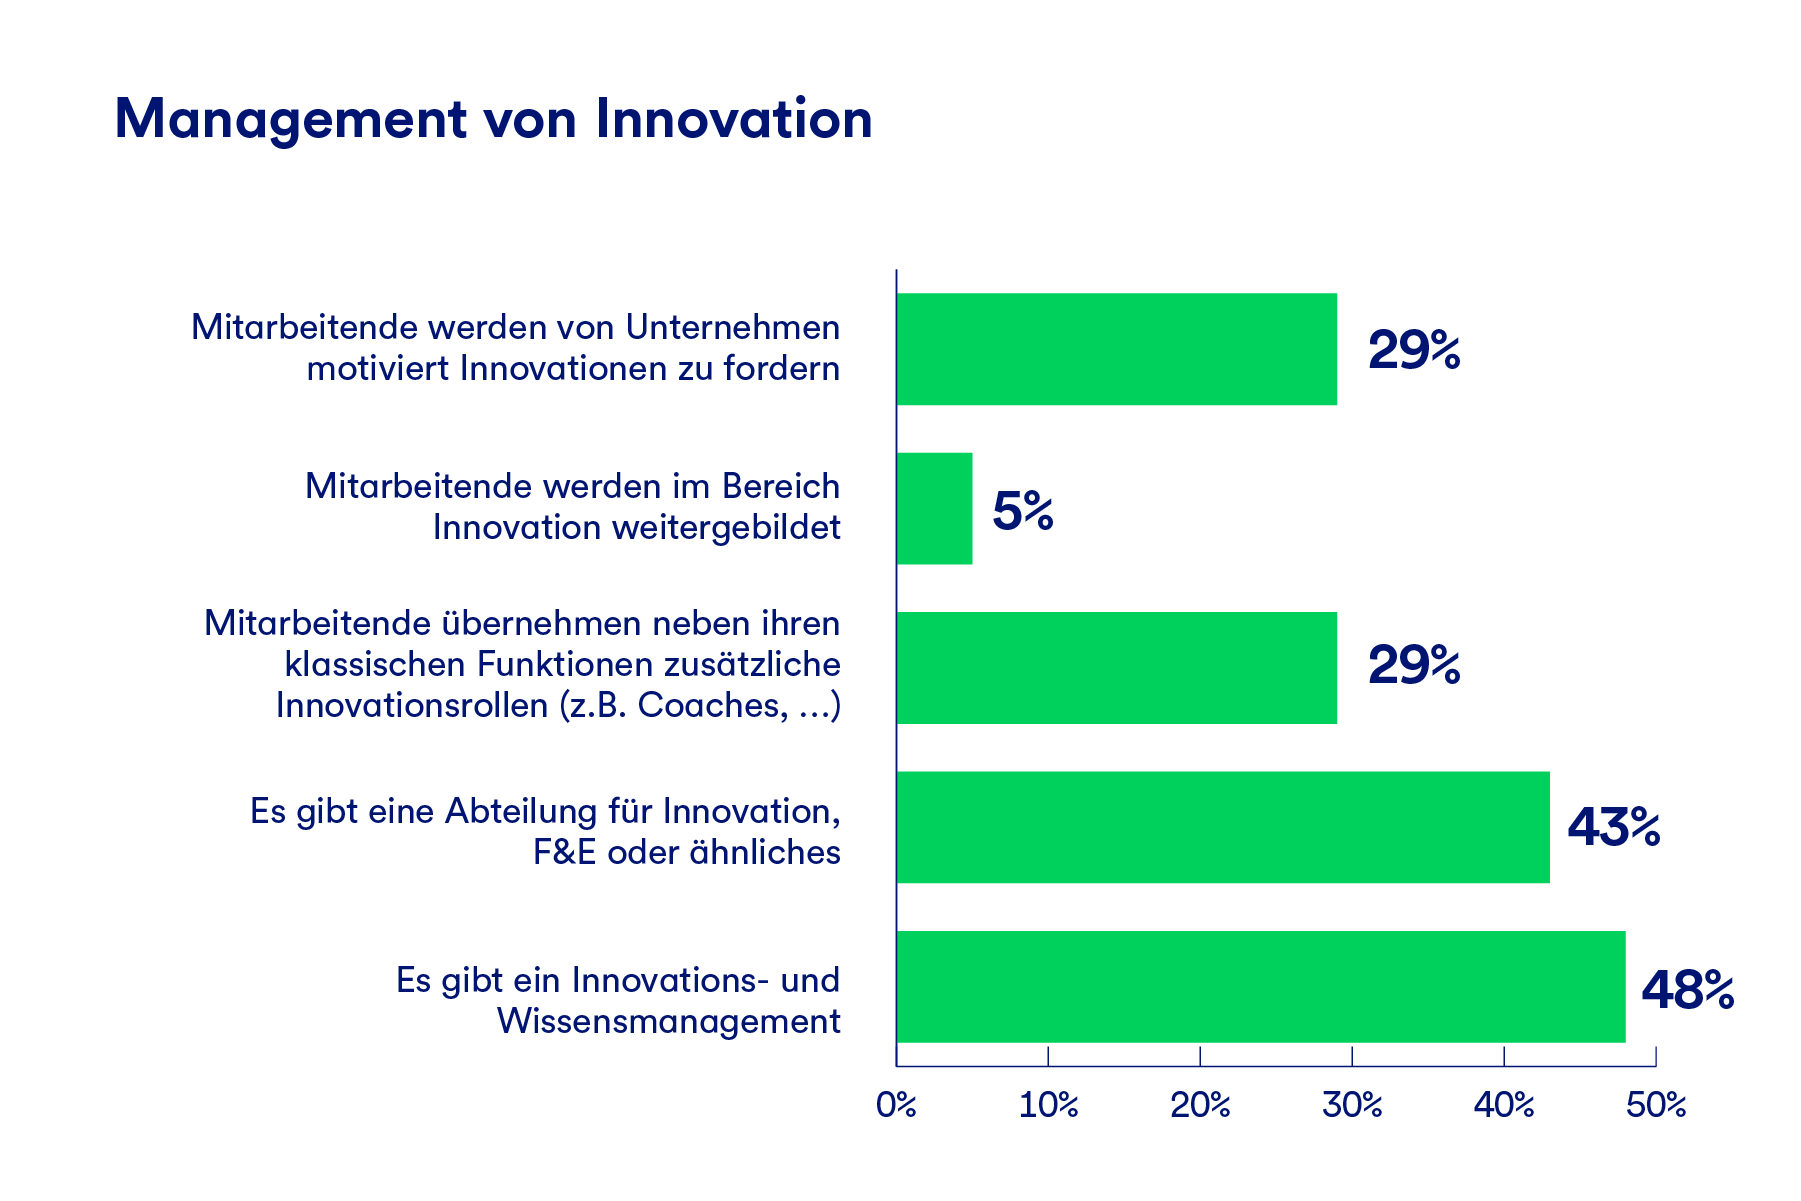 Eine Grafik die zeigt wie Unternehmen Management von Innnovationen umsetzen. Fast die Hälfte der Unternehmen hat ein Wissens- und Innovationsmanagement, 43% haben eine eigene Abteilung für Innovationsthemen.